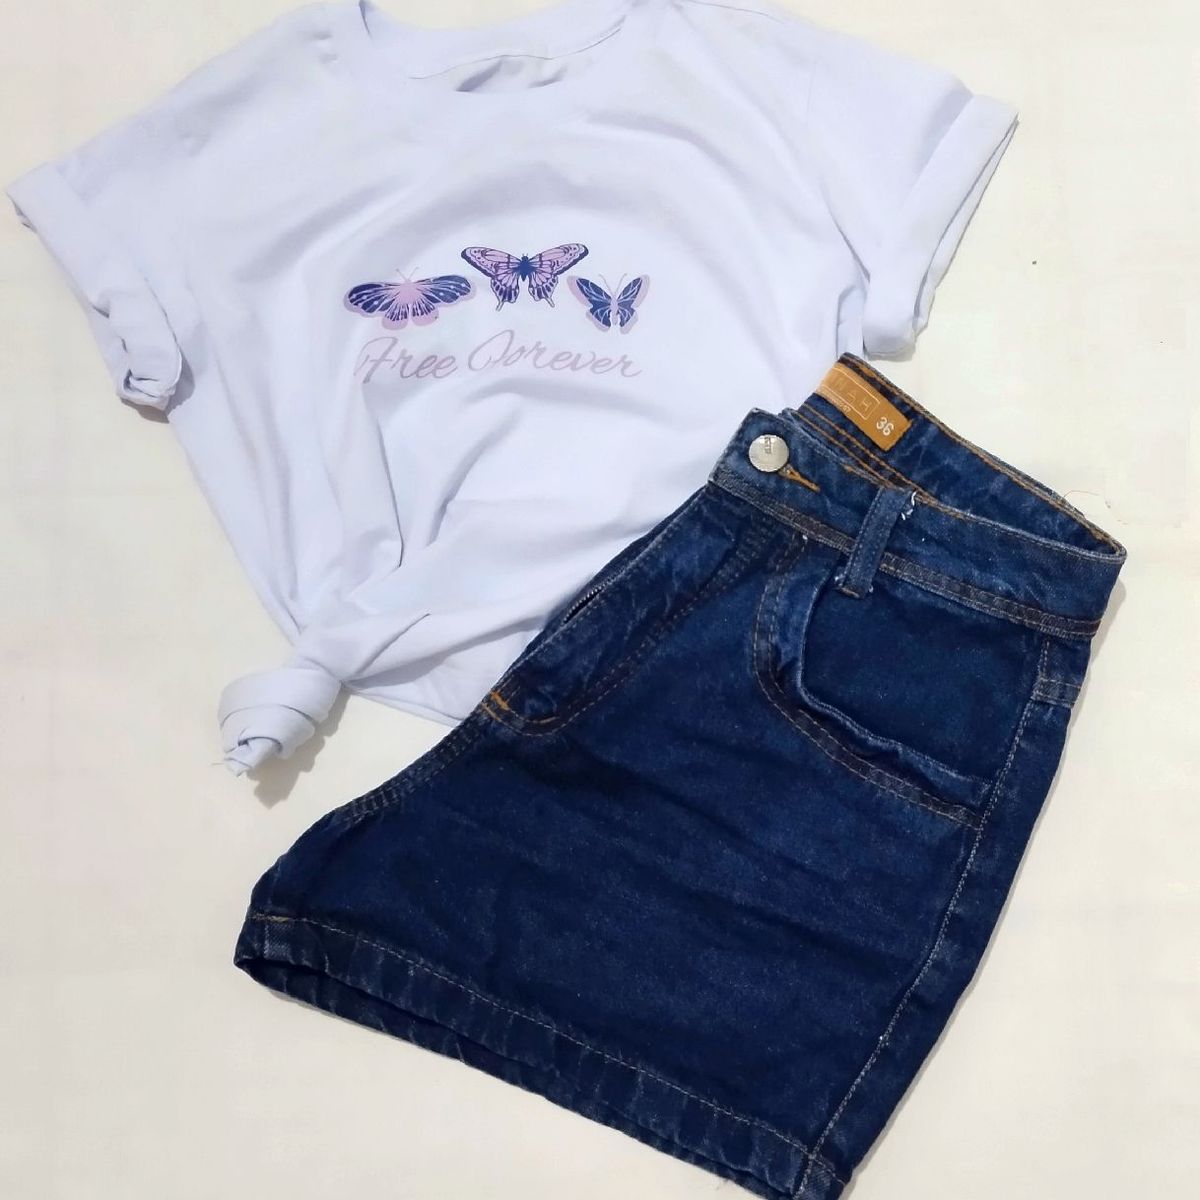 Blusa T-shirt feminina algodão use criativa